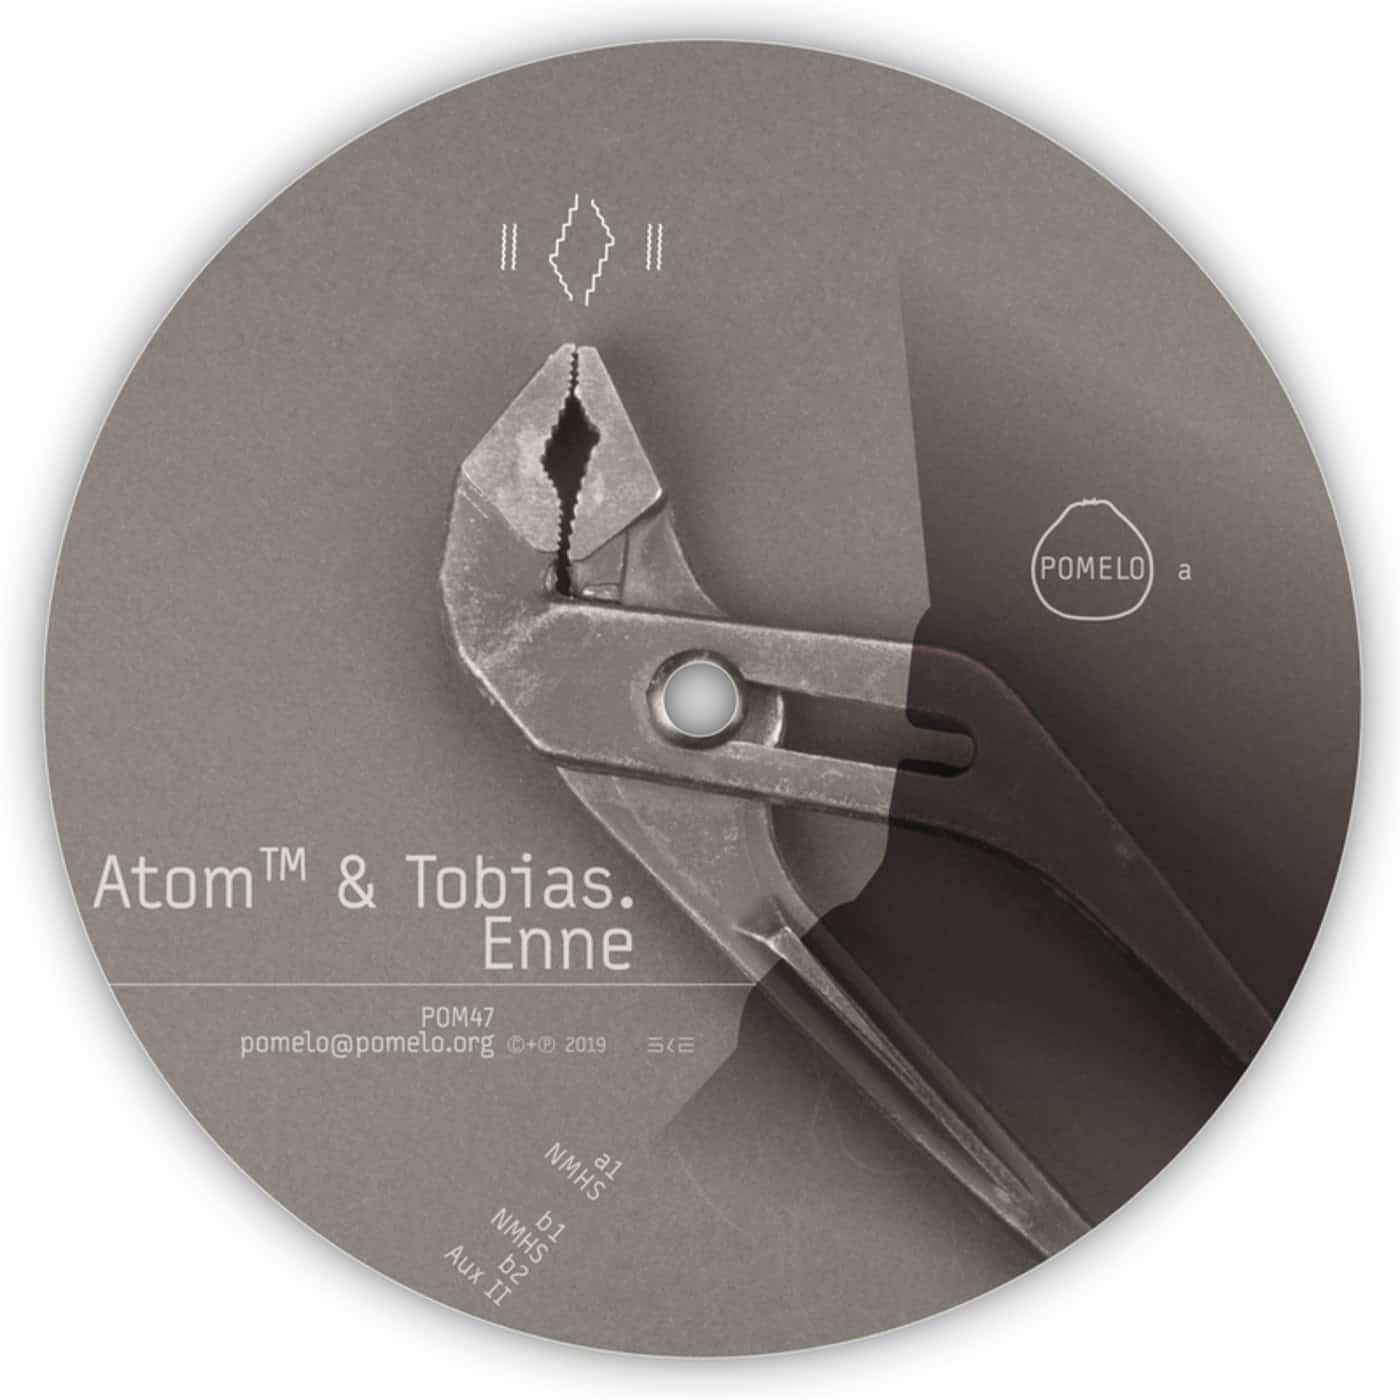 Download Tobias., AtomTM - Enne on Electrobuzz